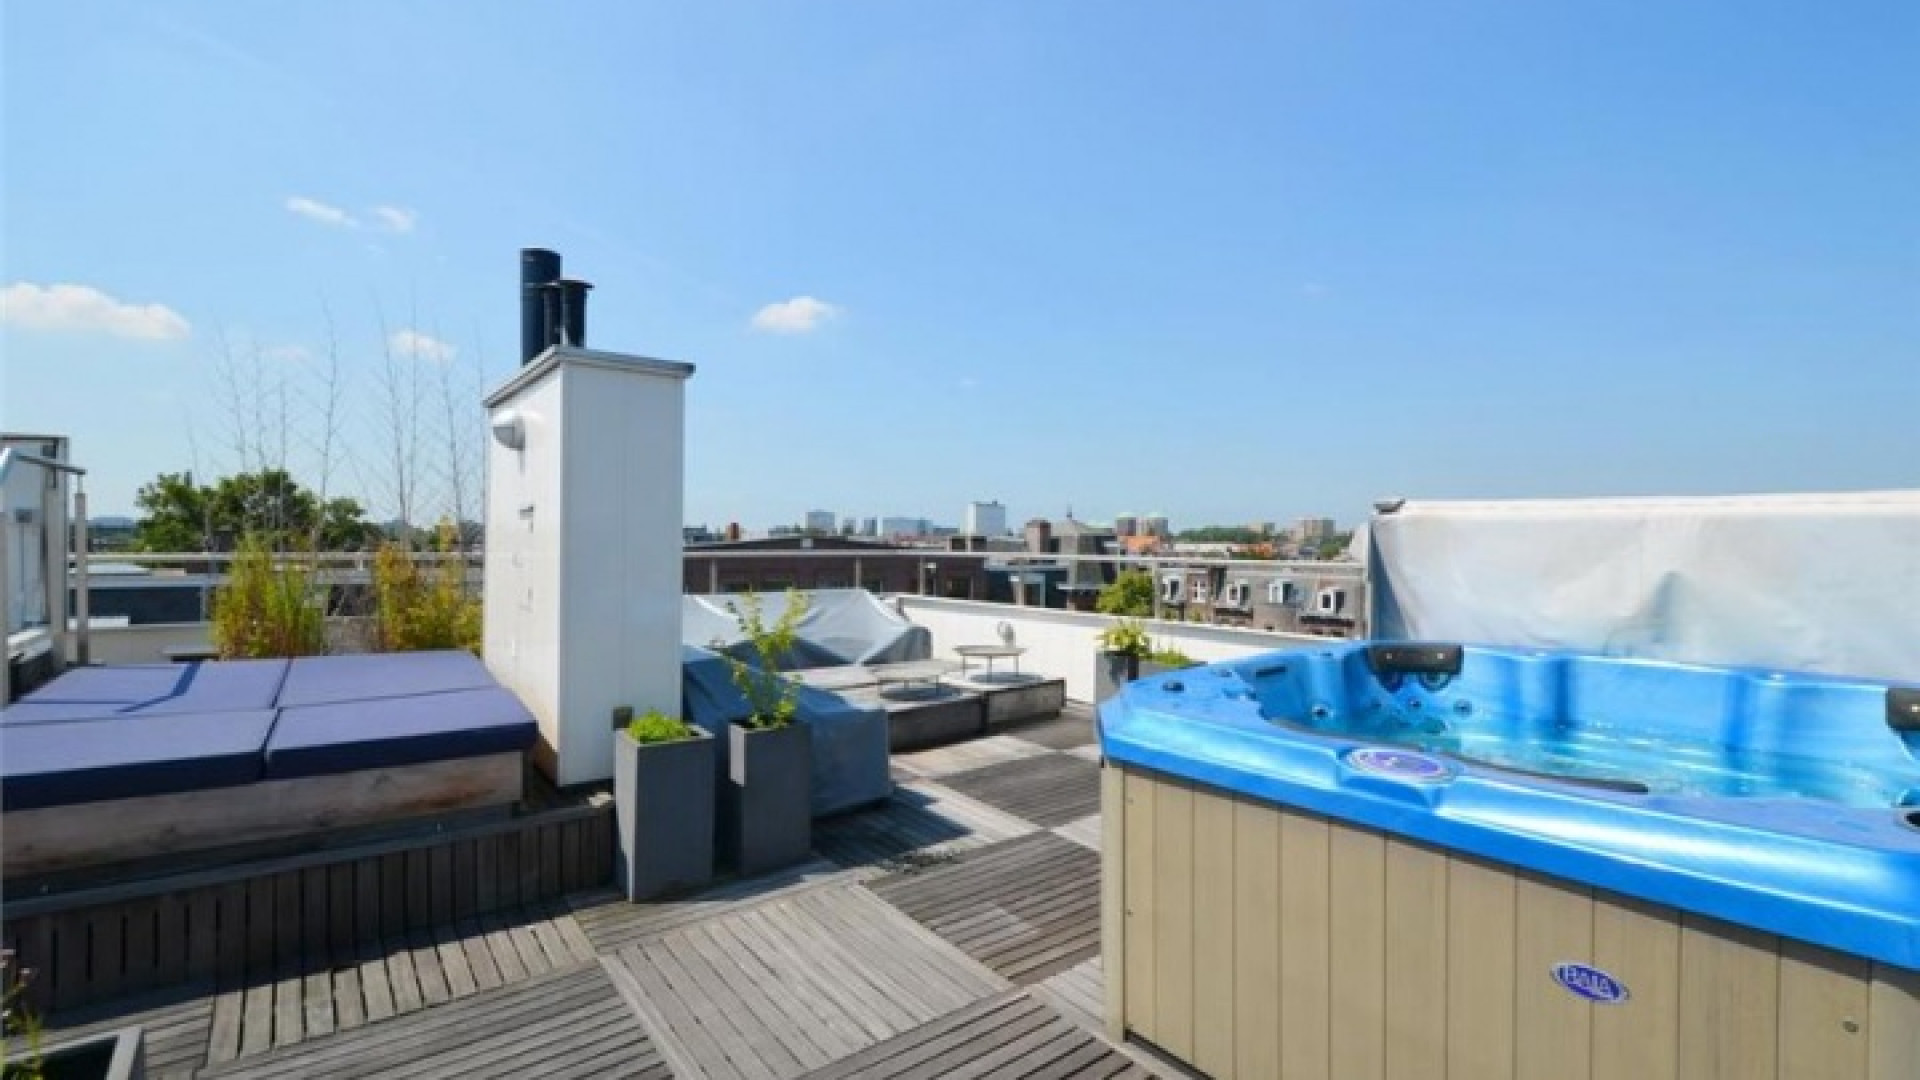 Frank Rijkaard zoekt huurder voor zijn luxe dubbele bovenhuis. Zie foto's 30